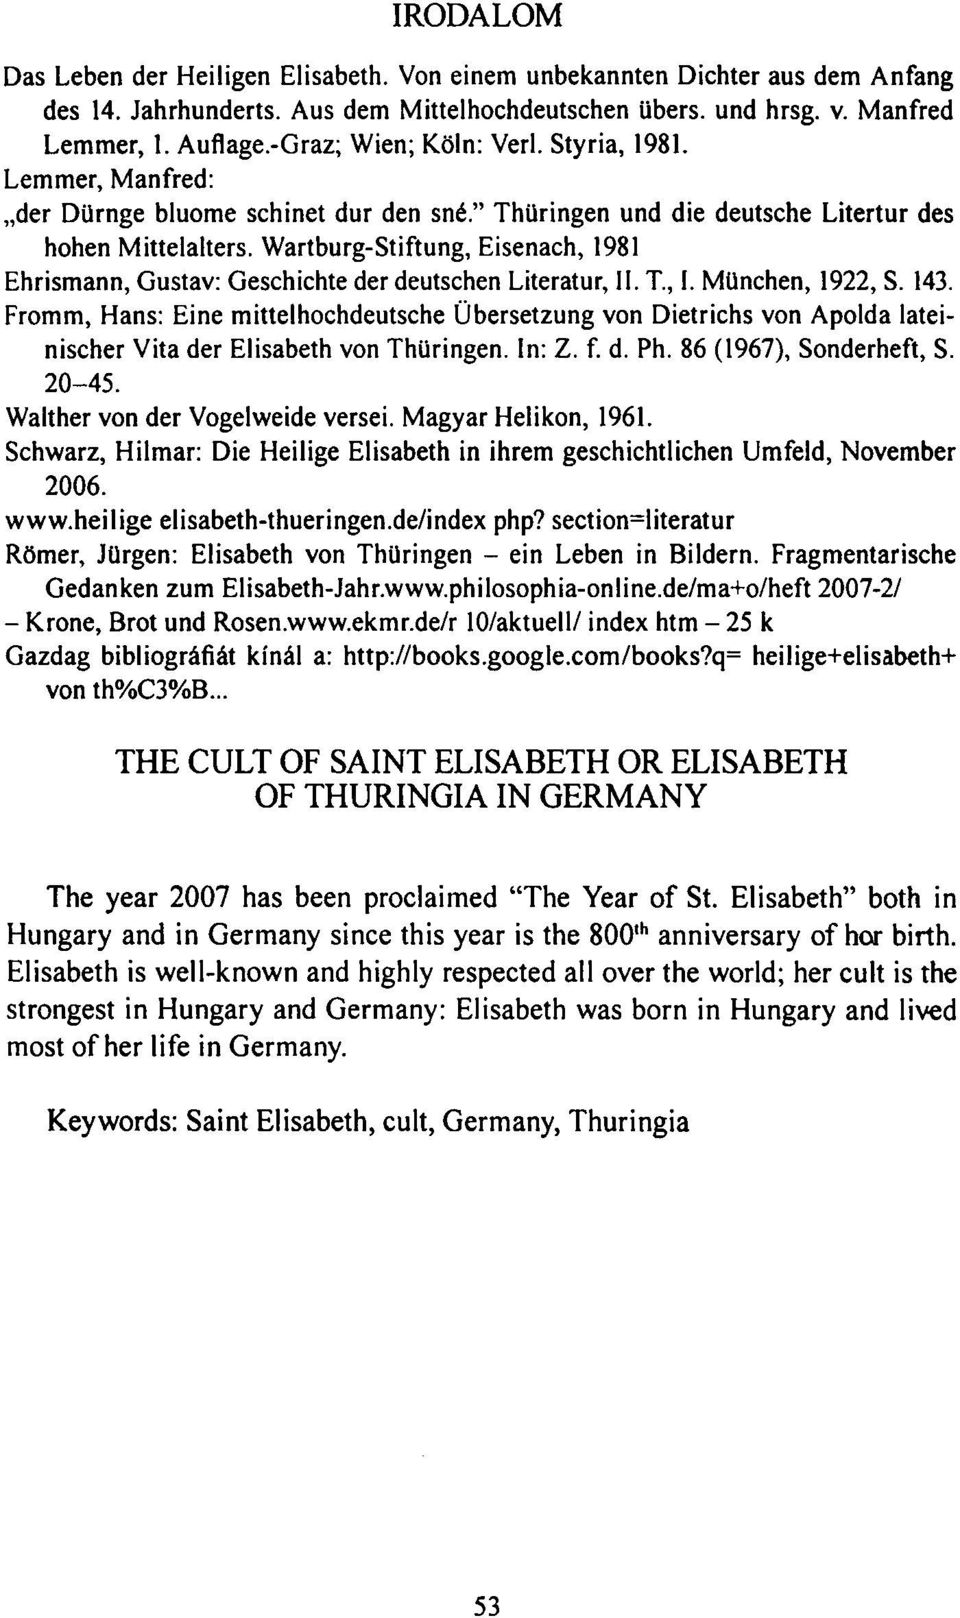 Wartburg-Stiftung, Eisenach, 1981 Ehrismann, Gustav: Geschichte der deutschen Literatur, II. T, I. München, 1922, S. 143.